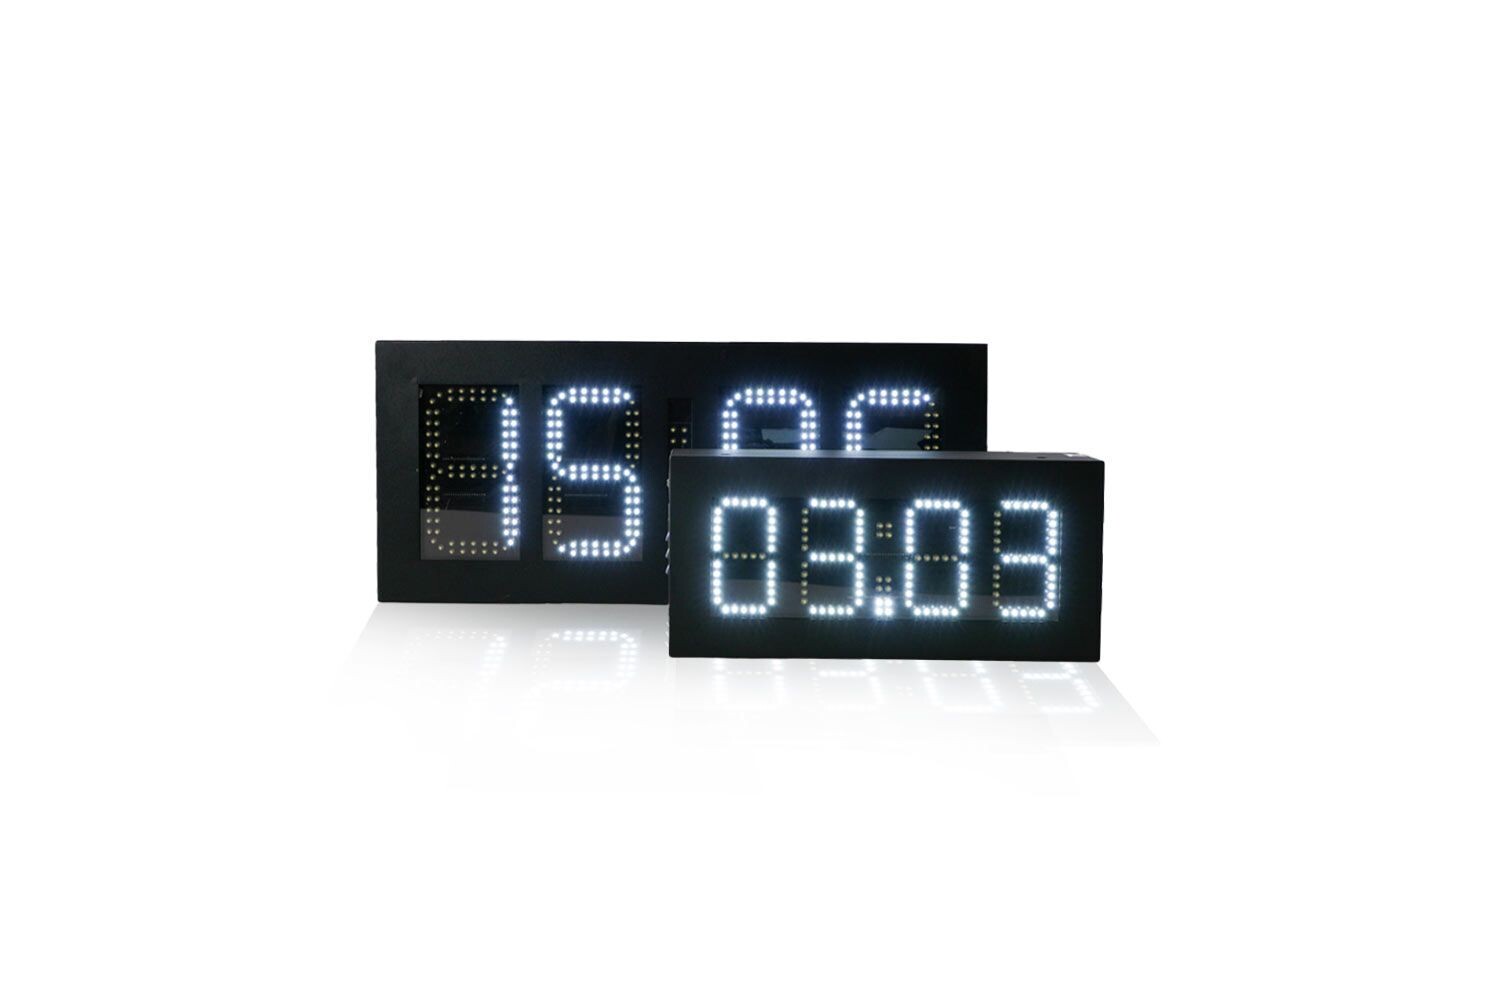 4 LED-Digital-Uhr mit Datum- u. Temperaturanzeige, doppelseitig